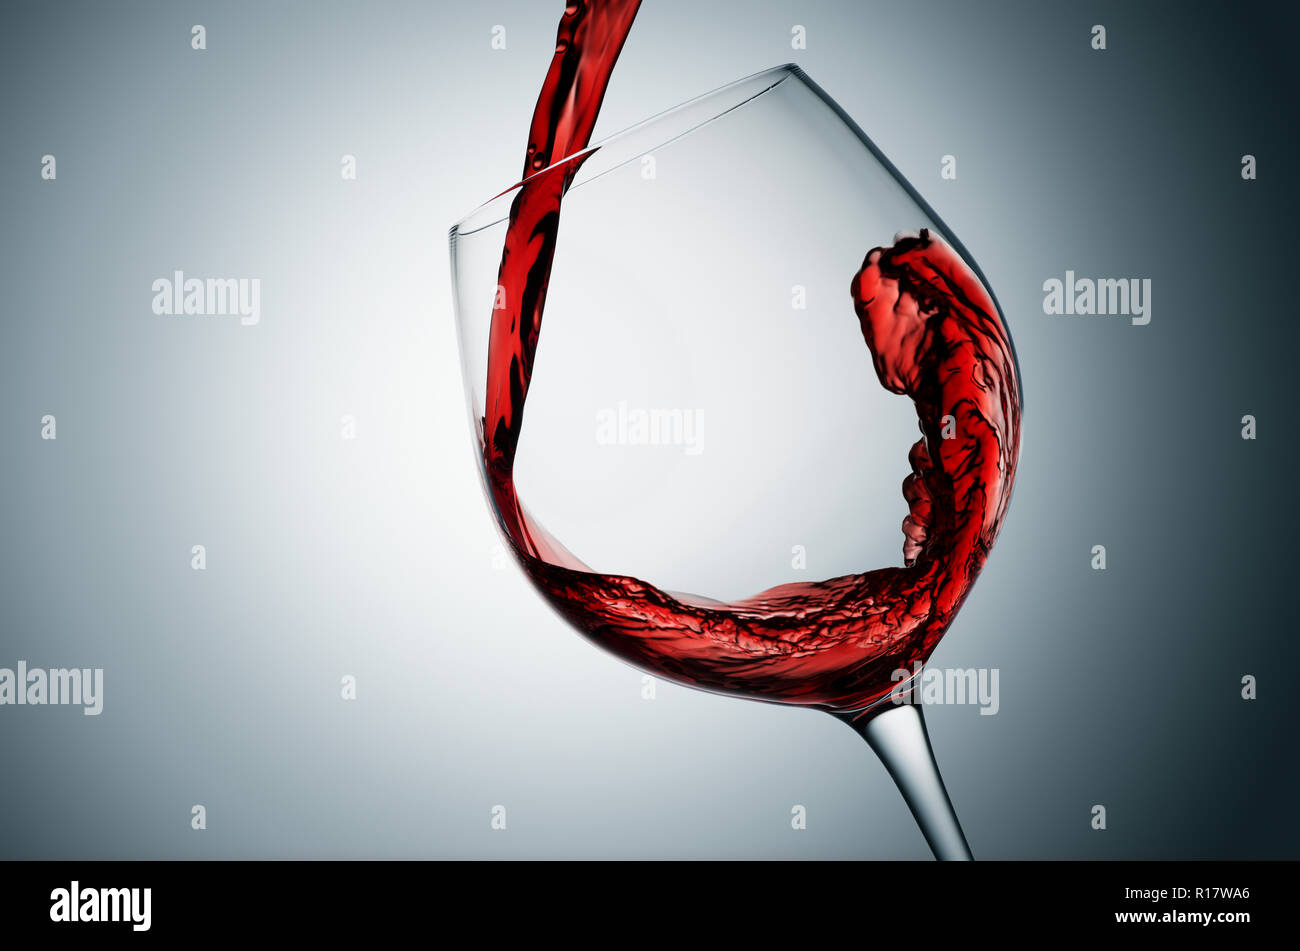 Verter en el vaso de vino tinto, fondo gris Foto de stock